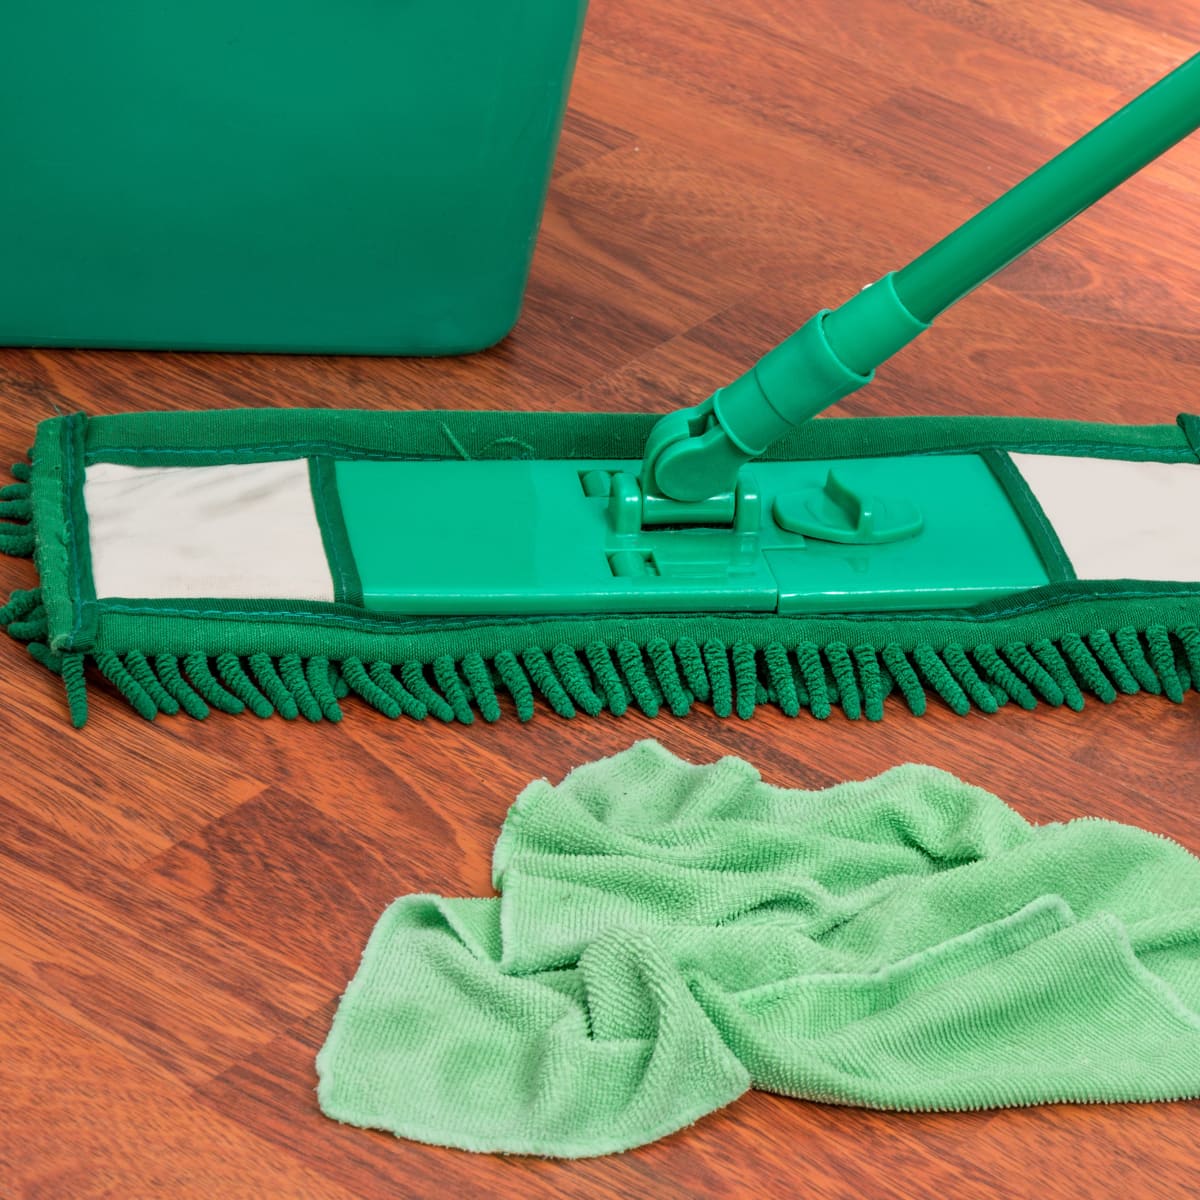 Diy Laminate Floor Cleaner Simple Home Ings Dengarden